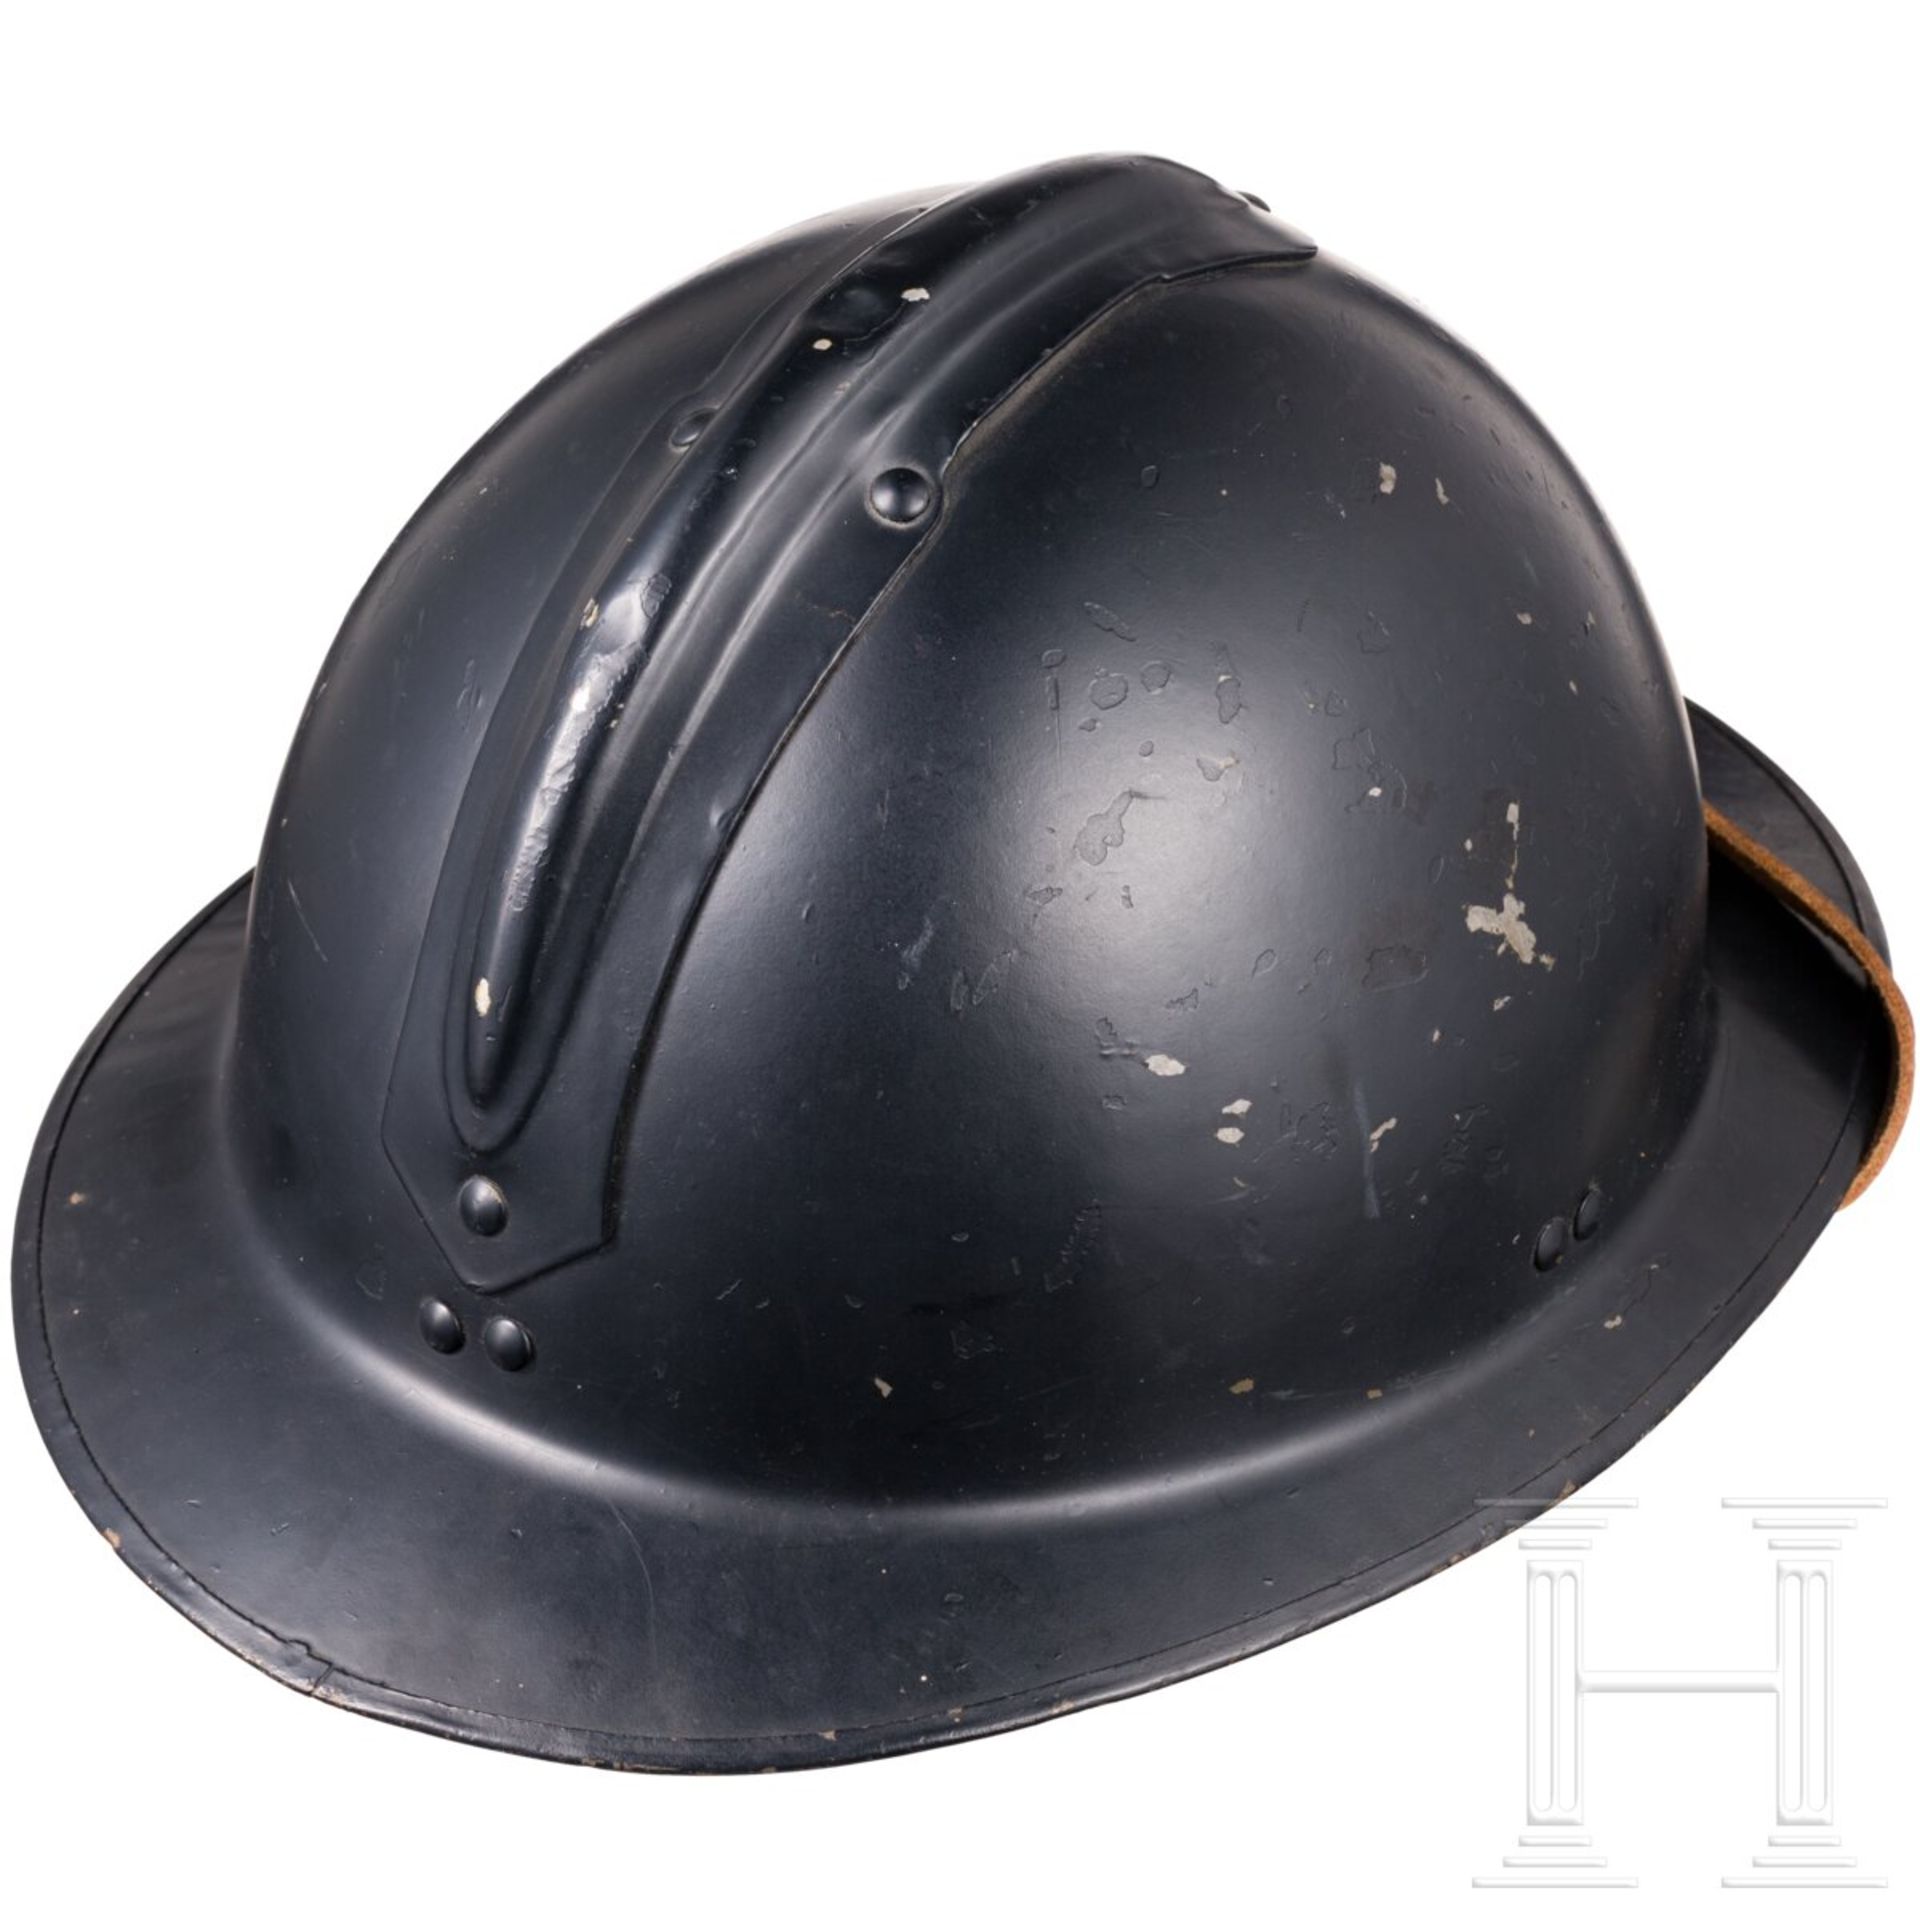 Helm der Gendarmerie, Luxemburg, um 1940 - Image 4 of 5